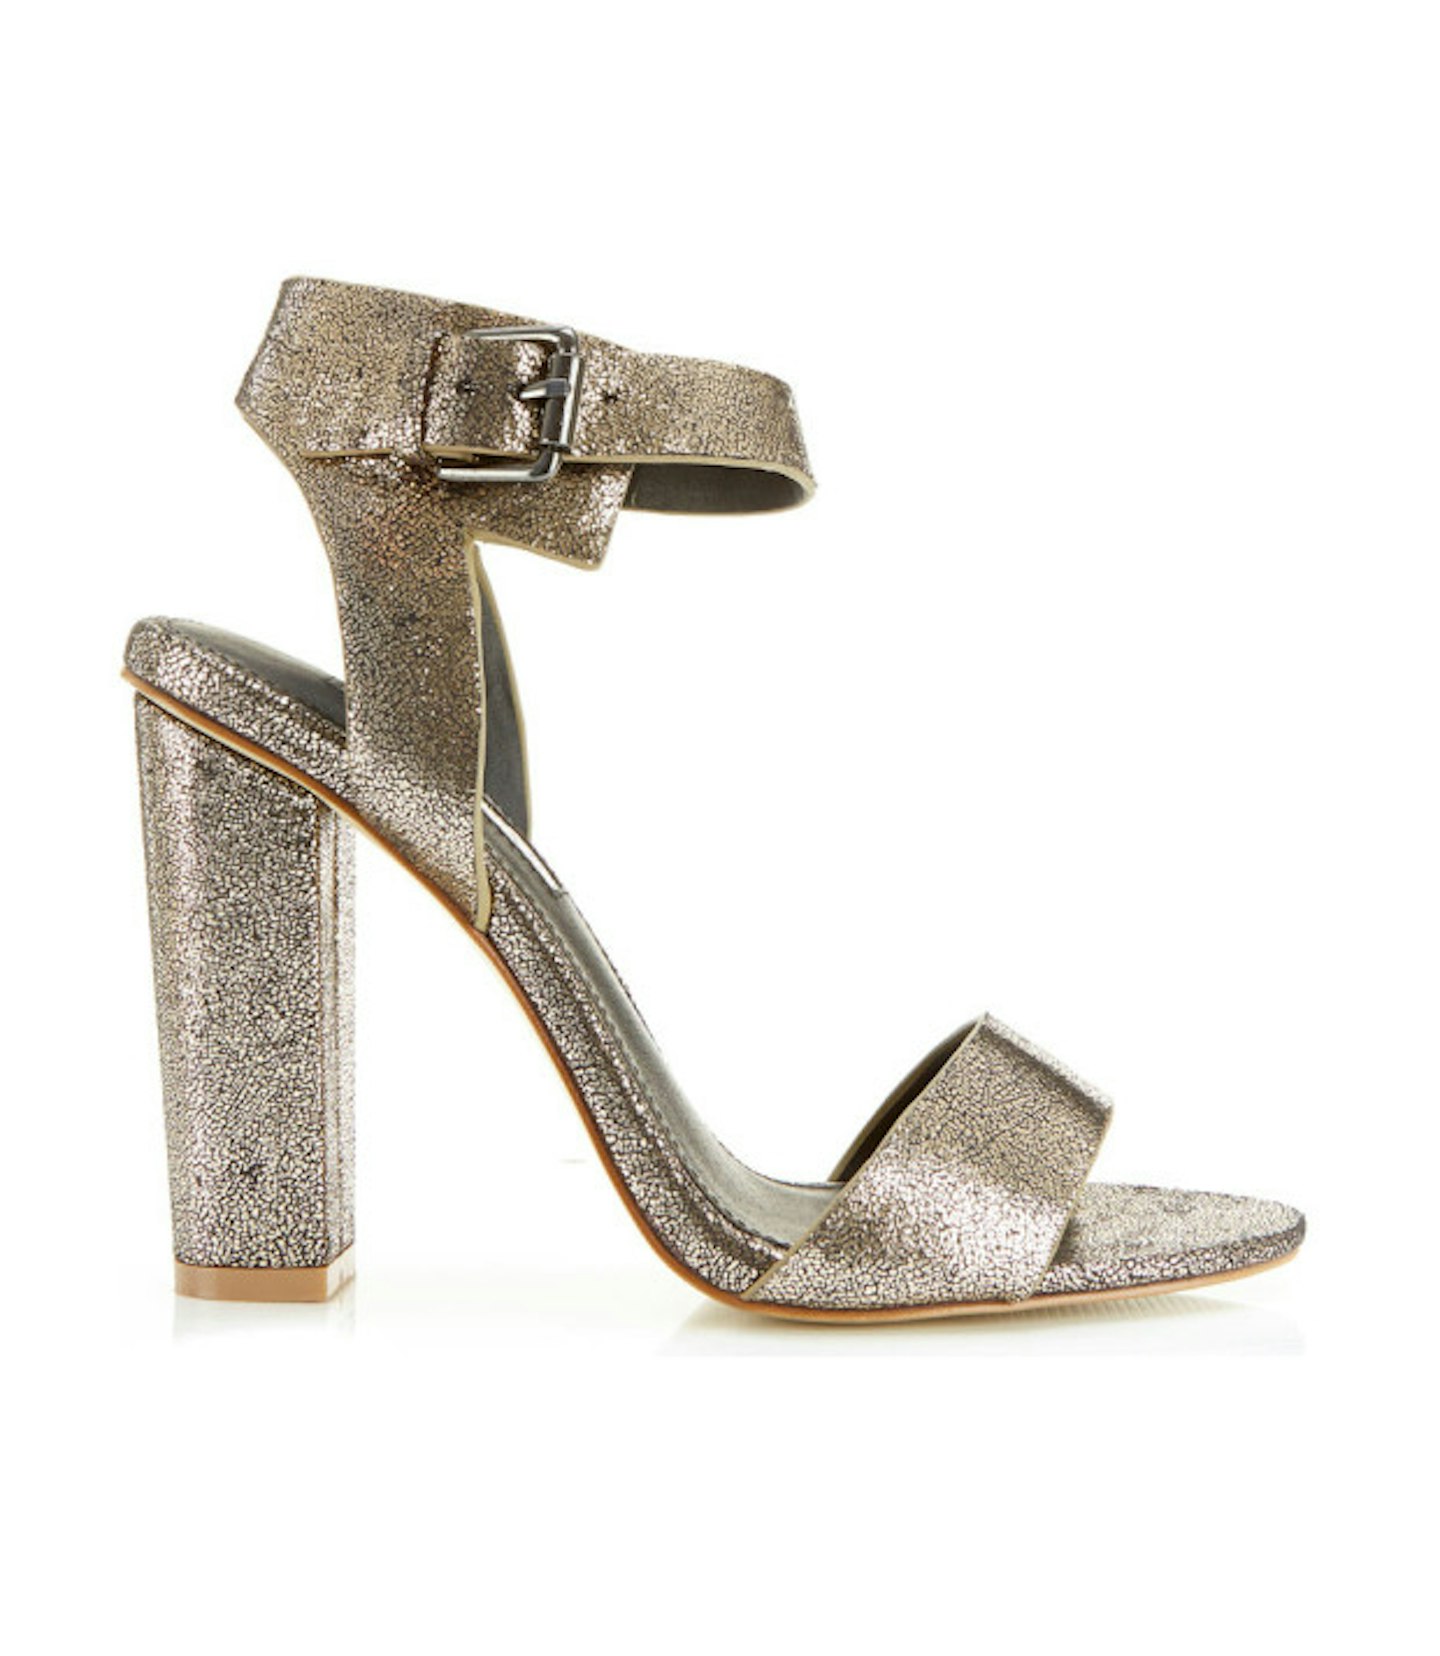 Metallic block heel sandals